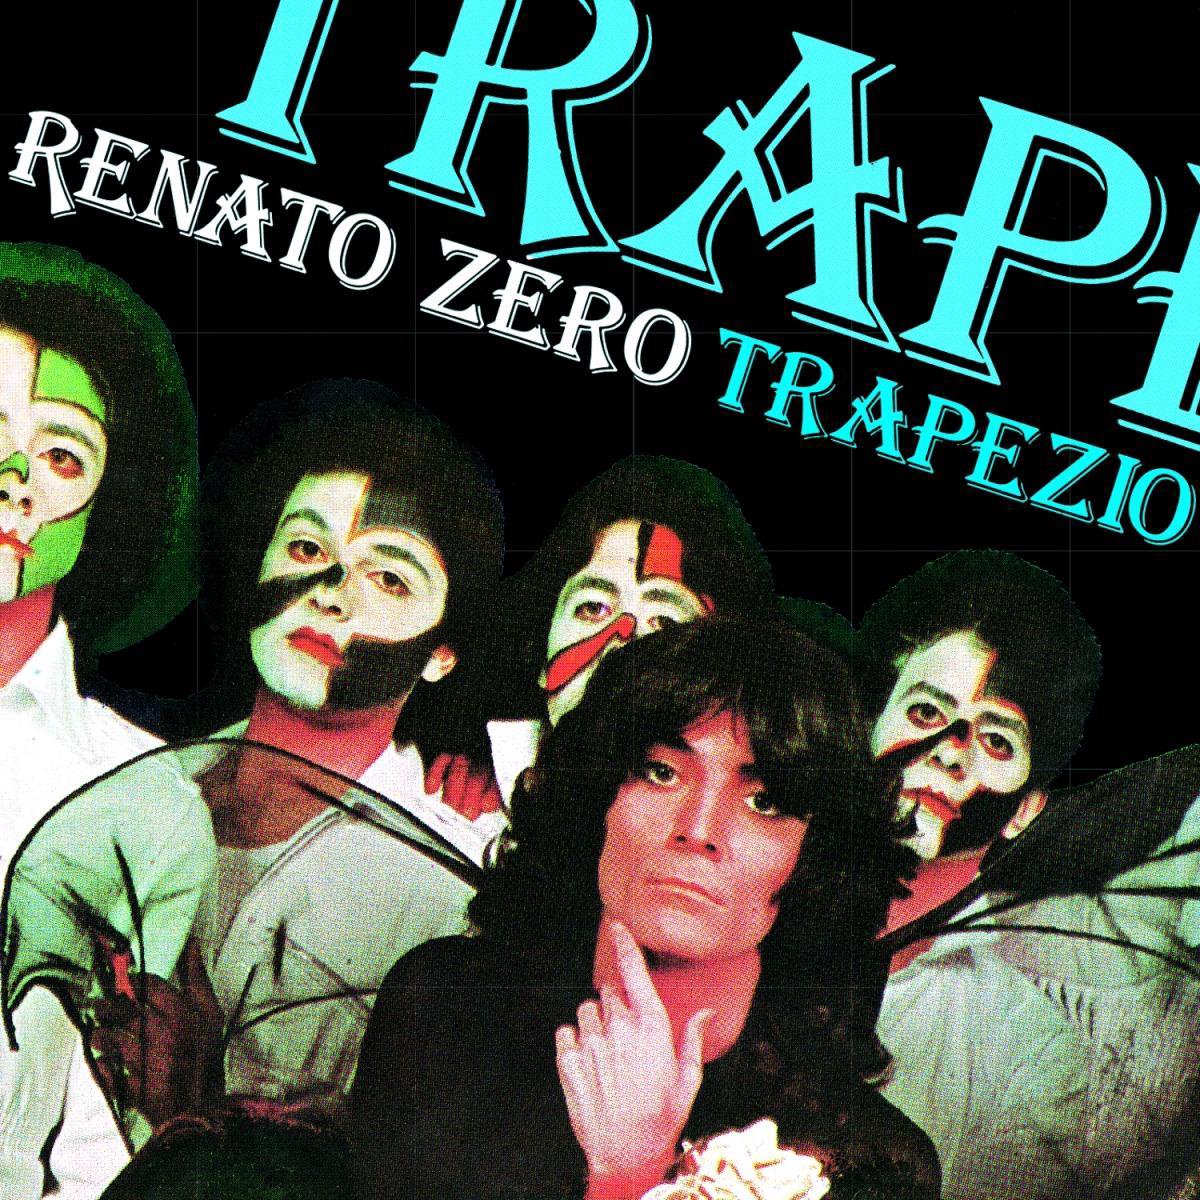 Vinile Renato Zero - Trapezio (Legacy Vinyl Edition) NUOVO SIGILLATO, EDIZIONE DEL 29/10/2021 SUBITO DISPONIBILE